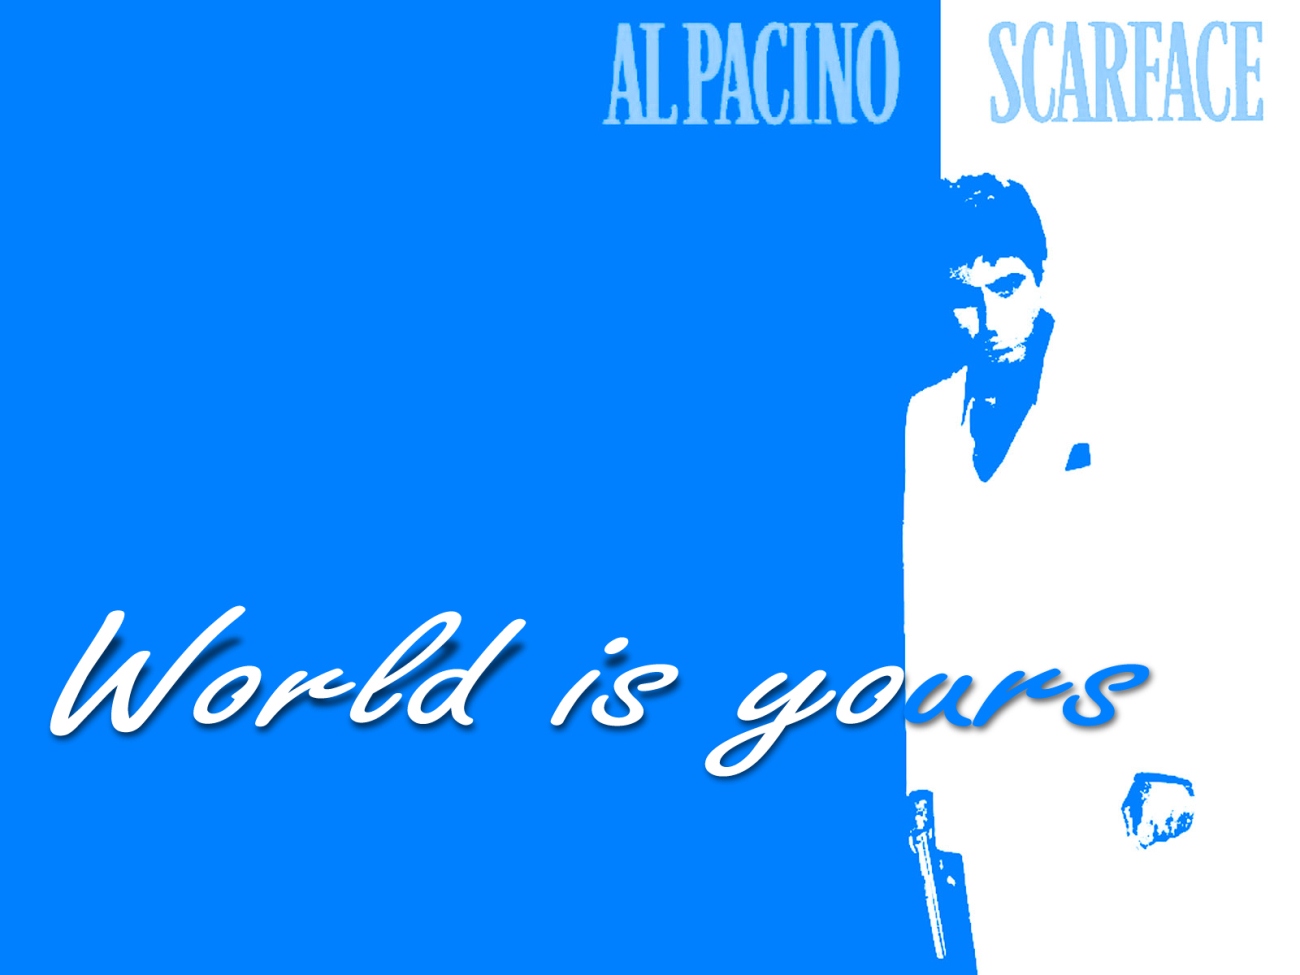 HD Wallpaper Tony Montana Al Pacino Scarface Photos Of On